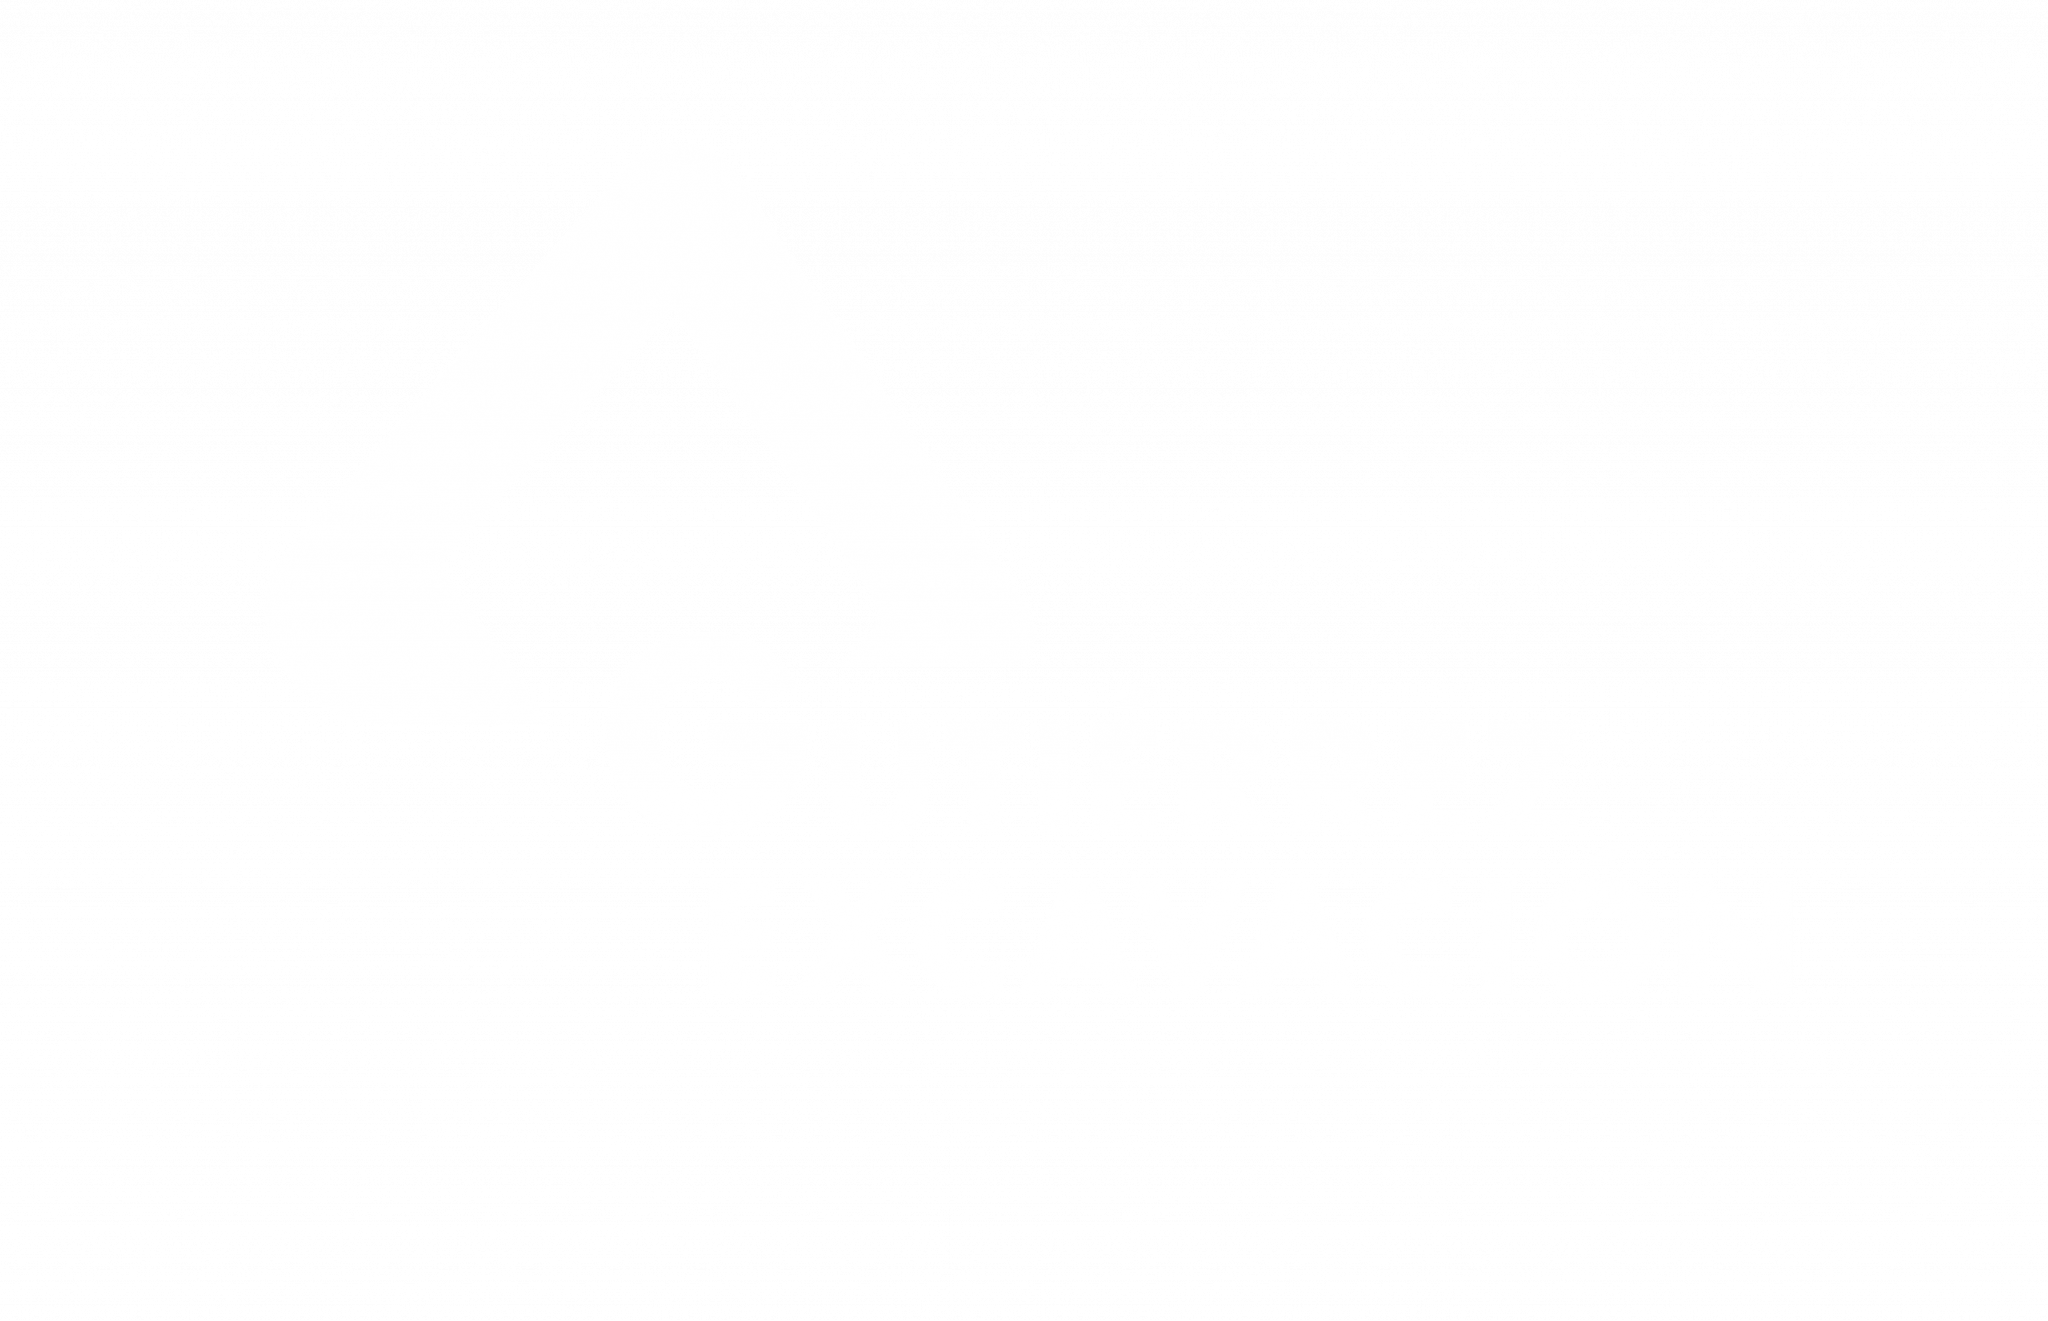 les millors empreses de l'excavació, moviment de terres i demolicions en l'àmbit de la construcció i àmpliament conegut i recomanable. Qui no coneix Gutierrez?